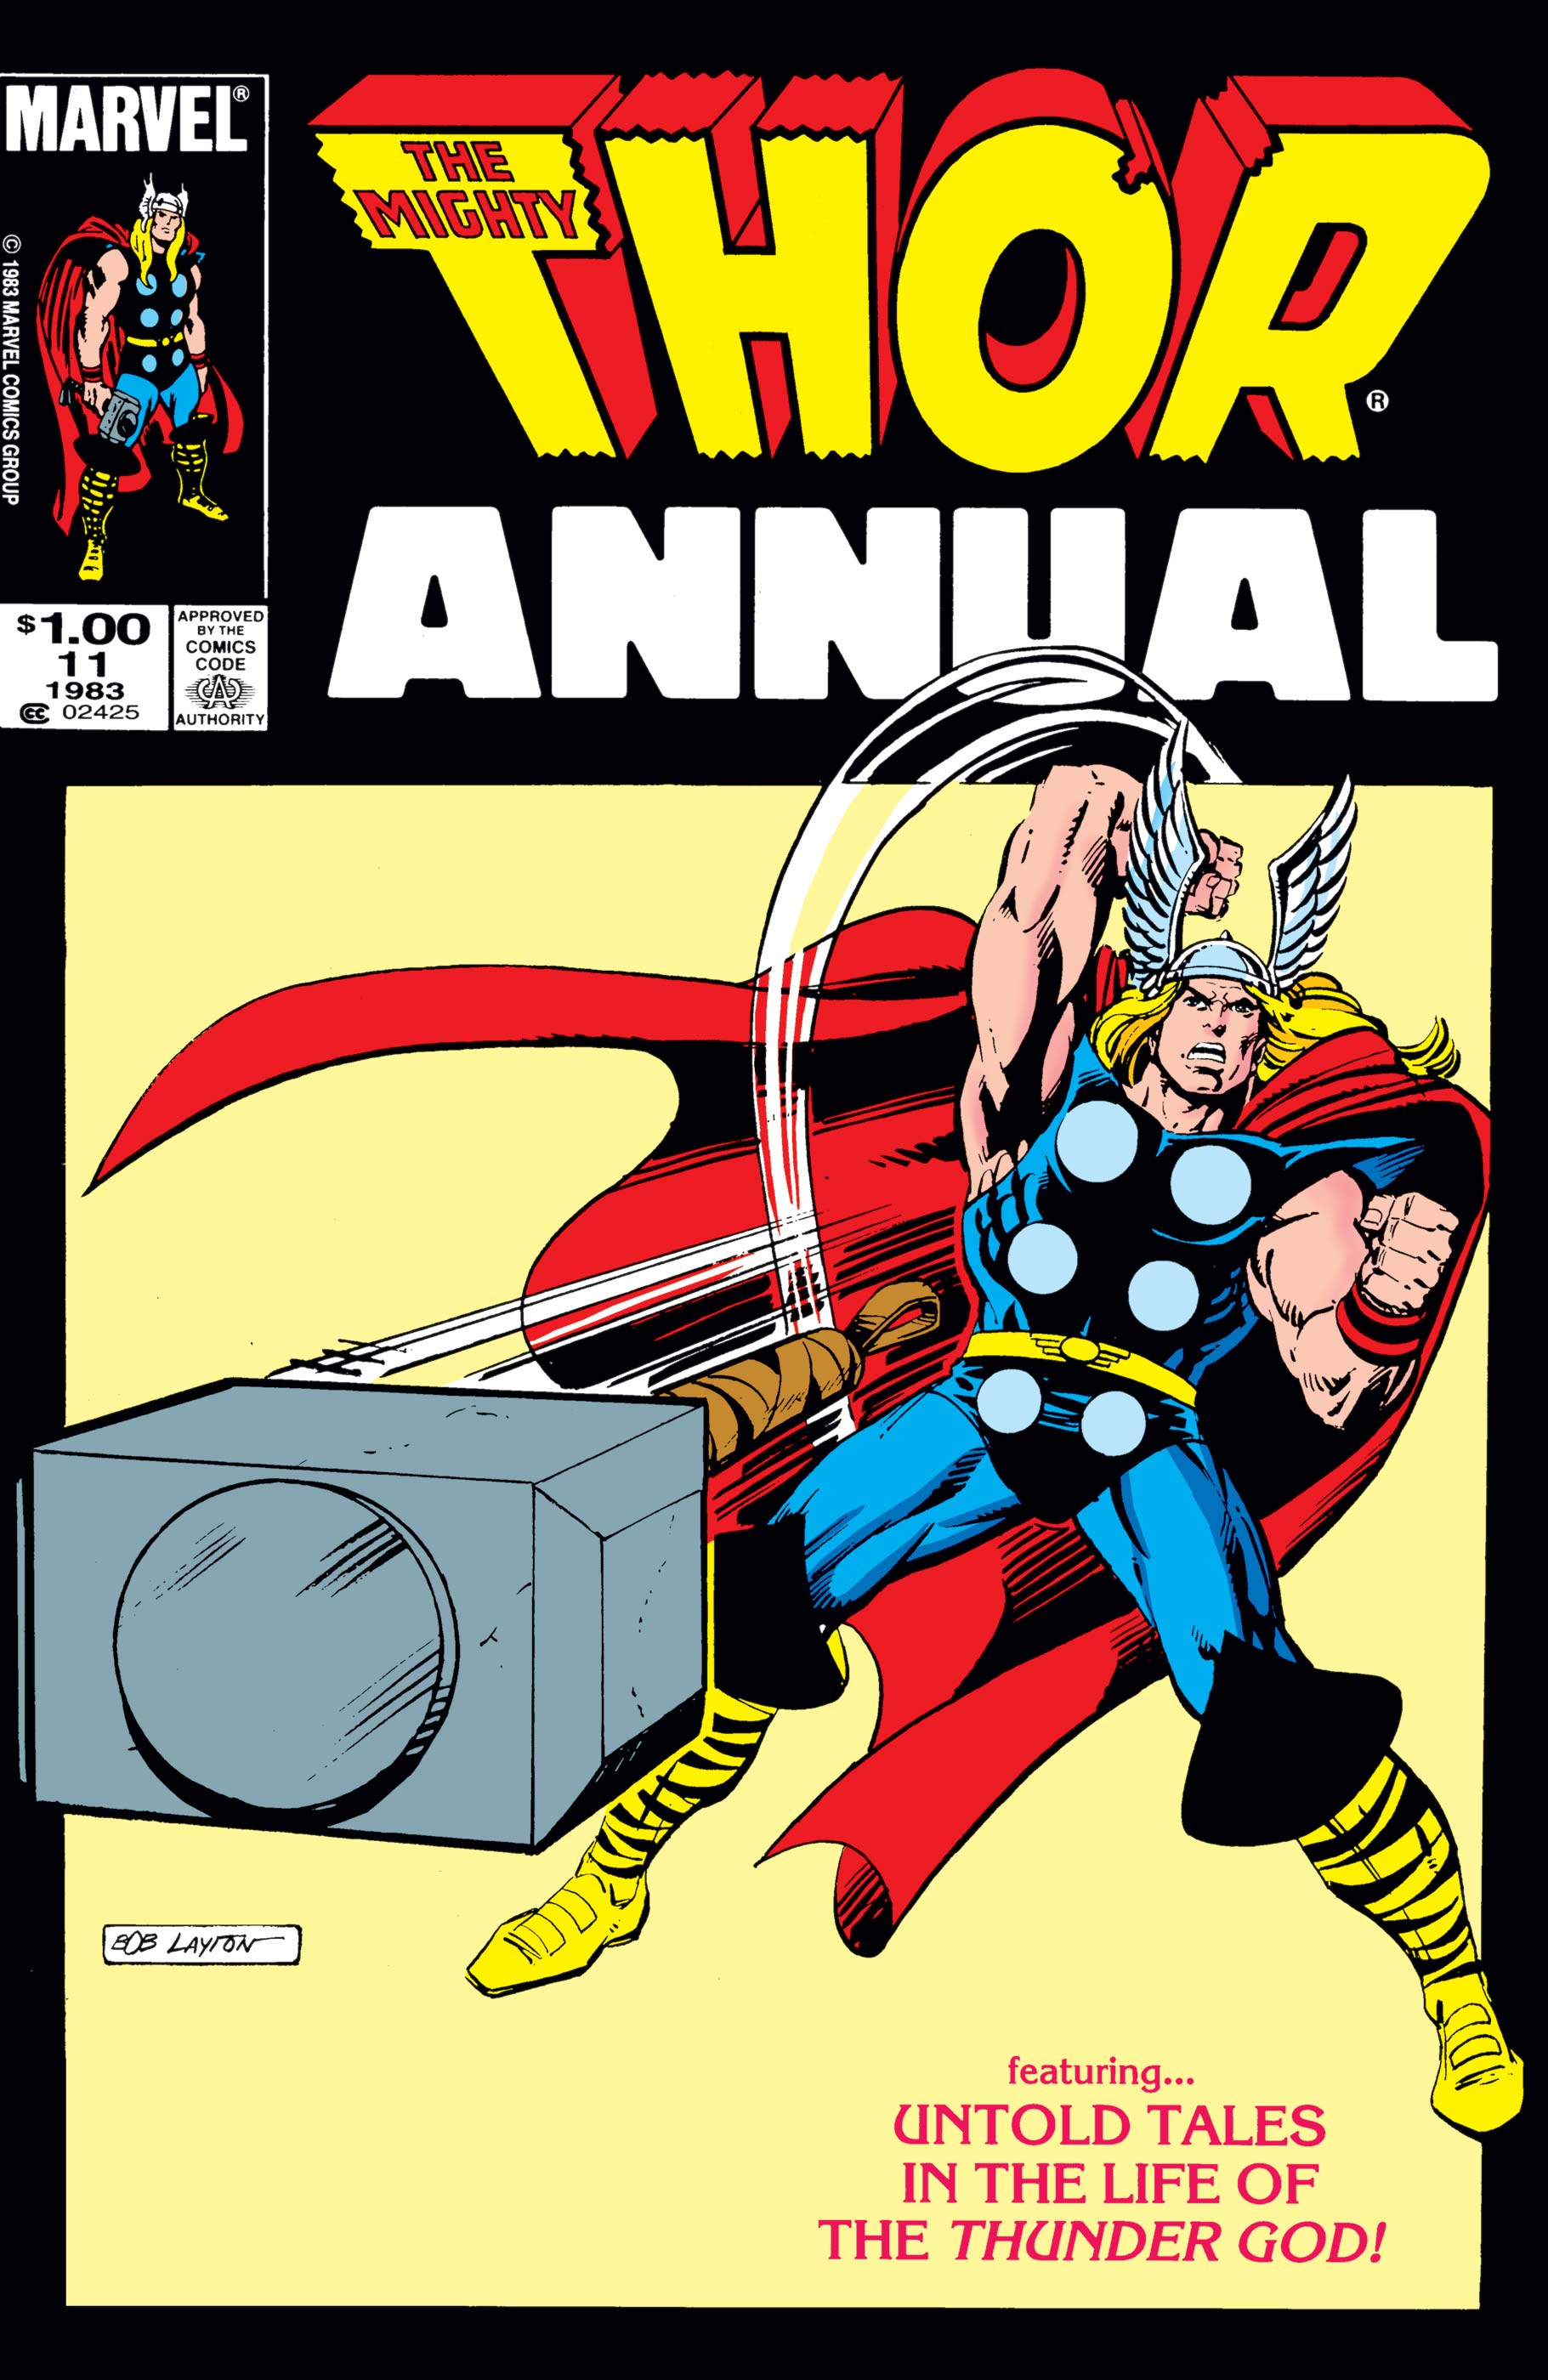 Thor Annual (1966) #11